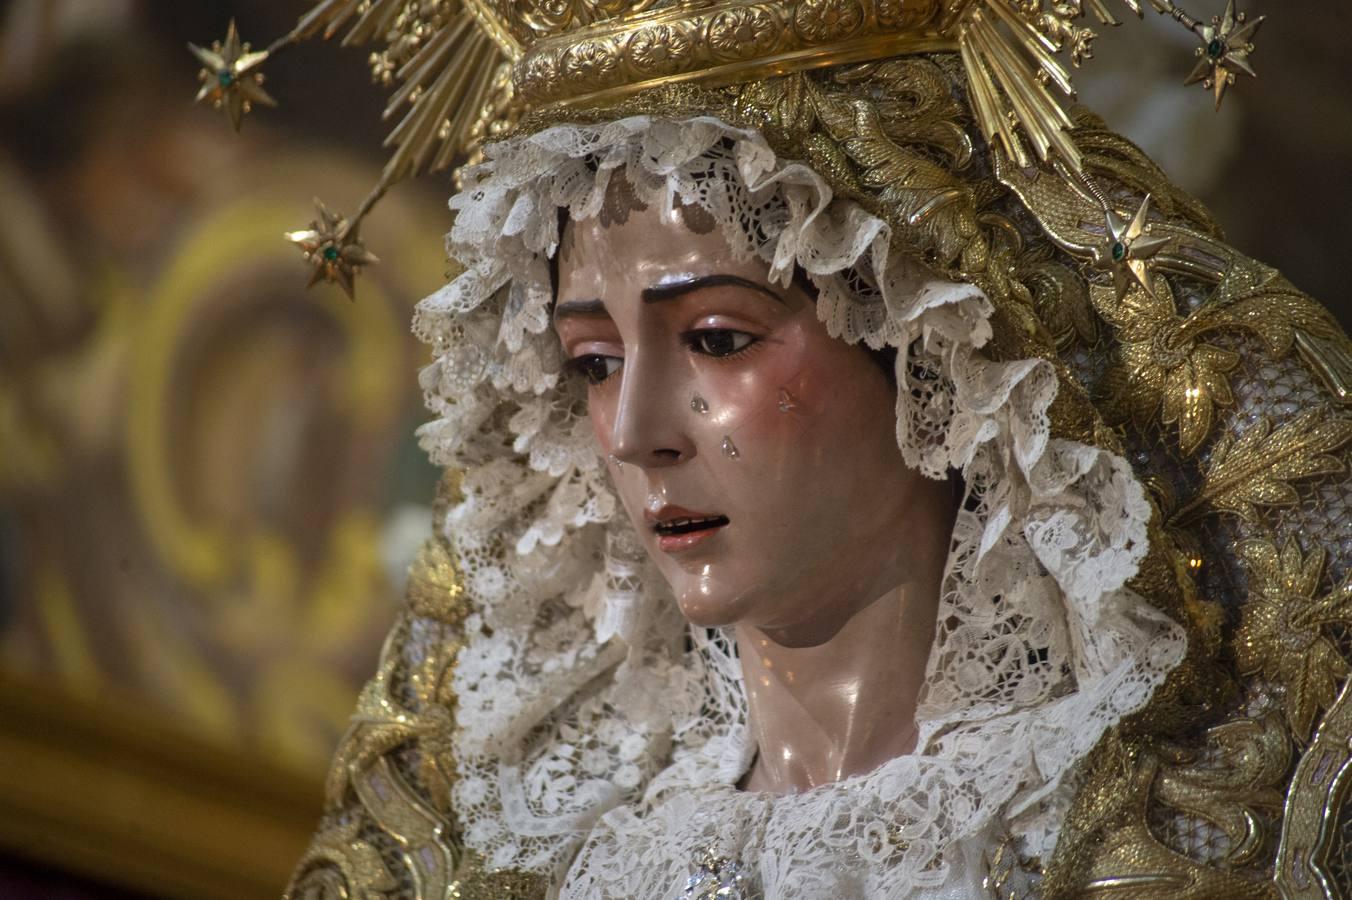 Galería de la Virgen del Rocío de la Redención